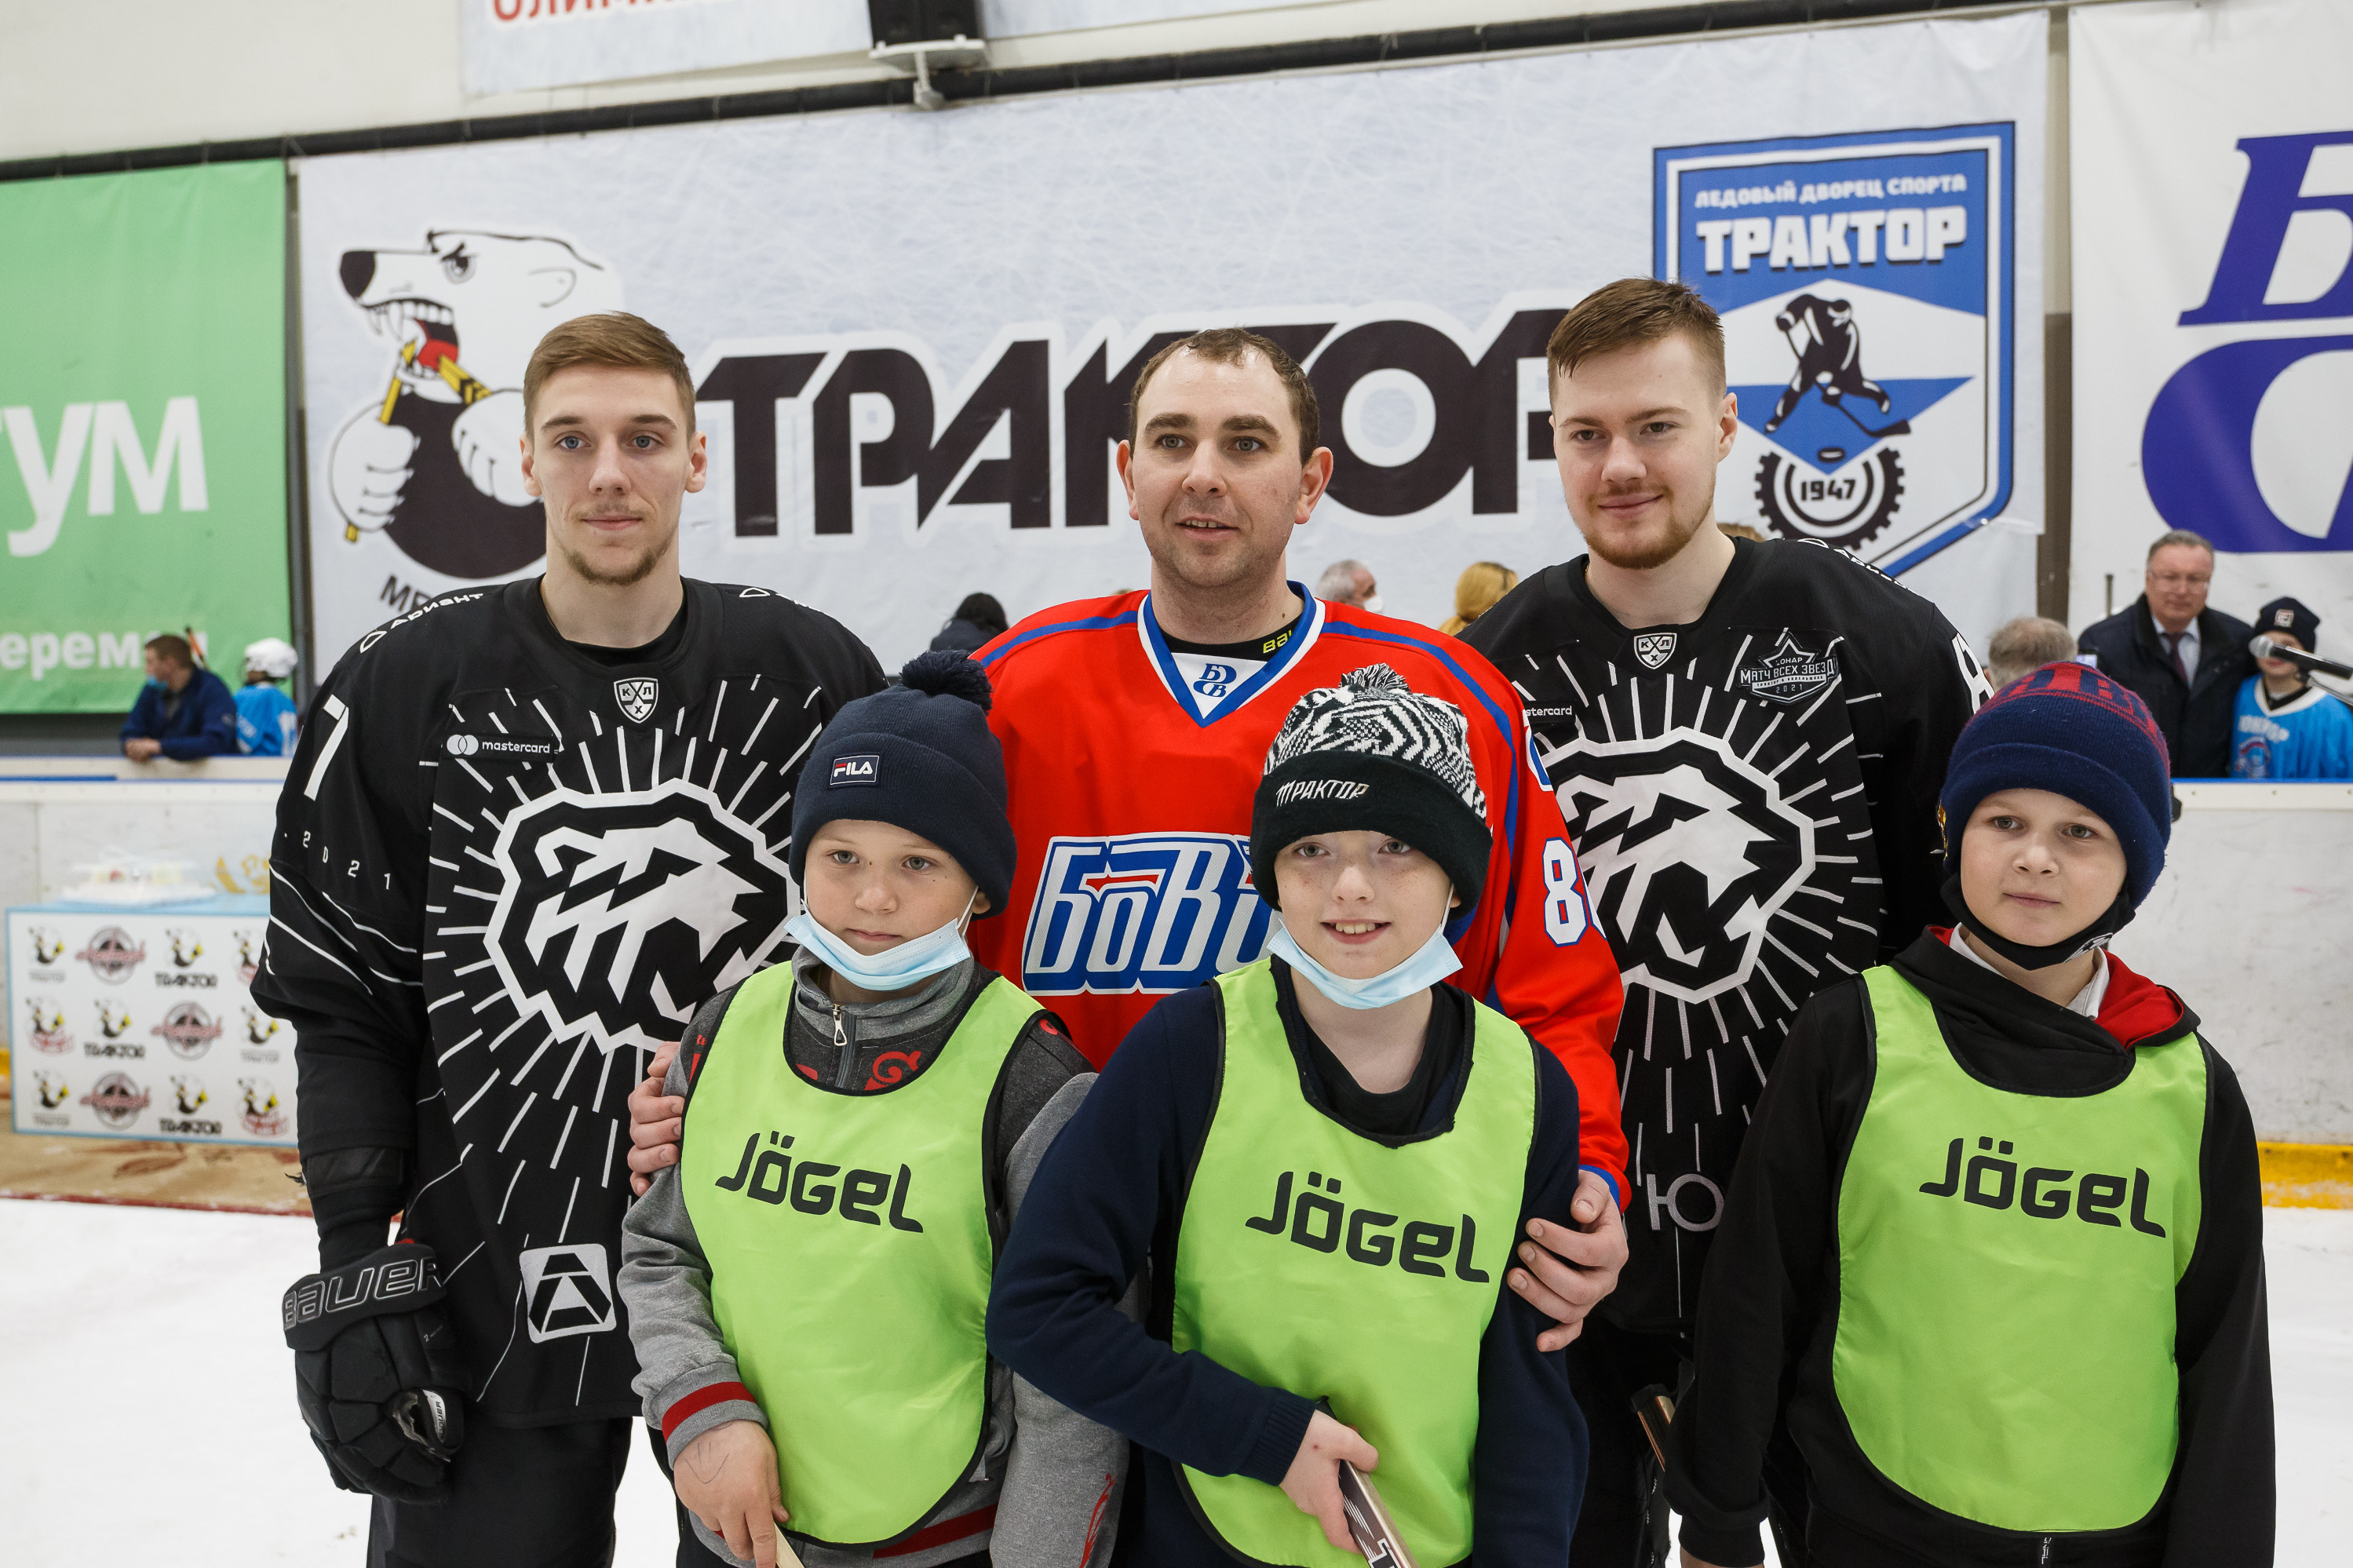 Товарищеский матч между командой «БОВИД» и сборной детских команд по хоккею Тракторозаводского района стал захватывающим зрелищем